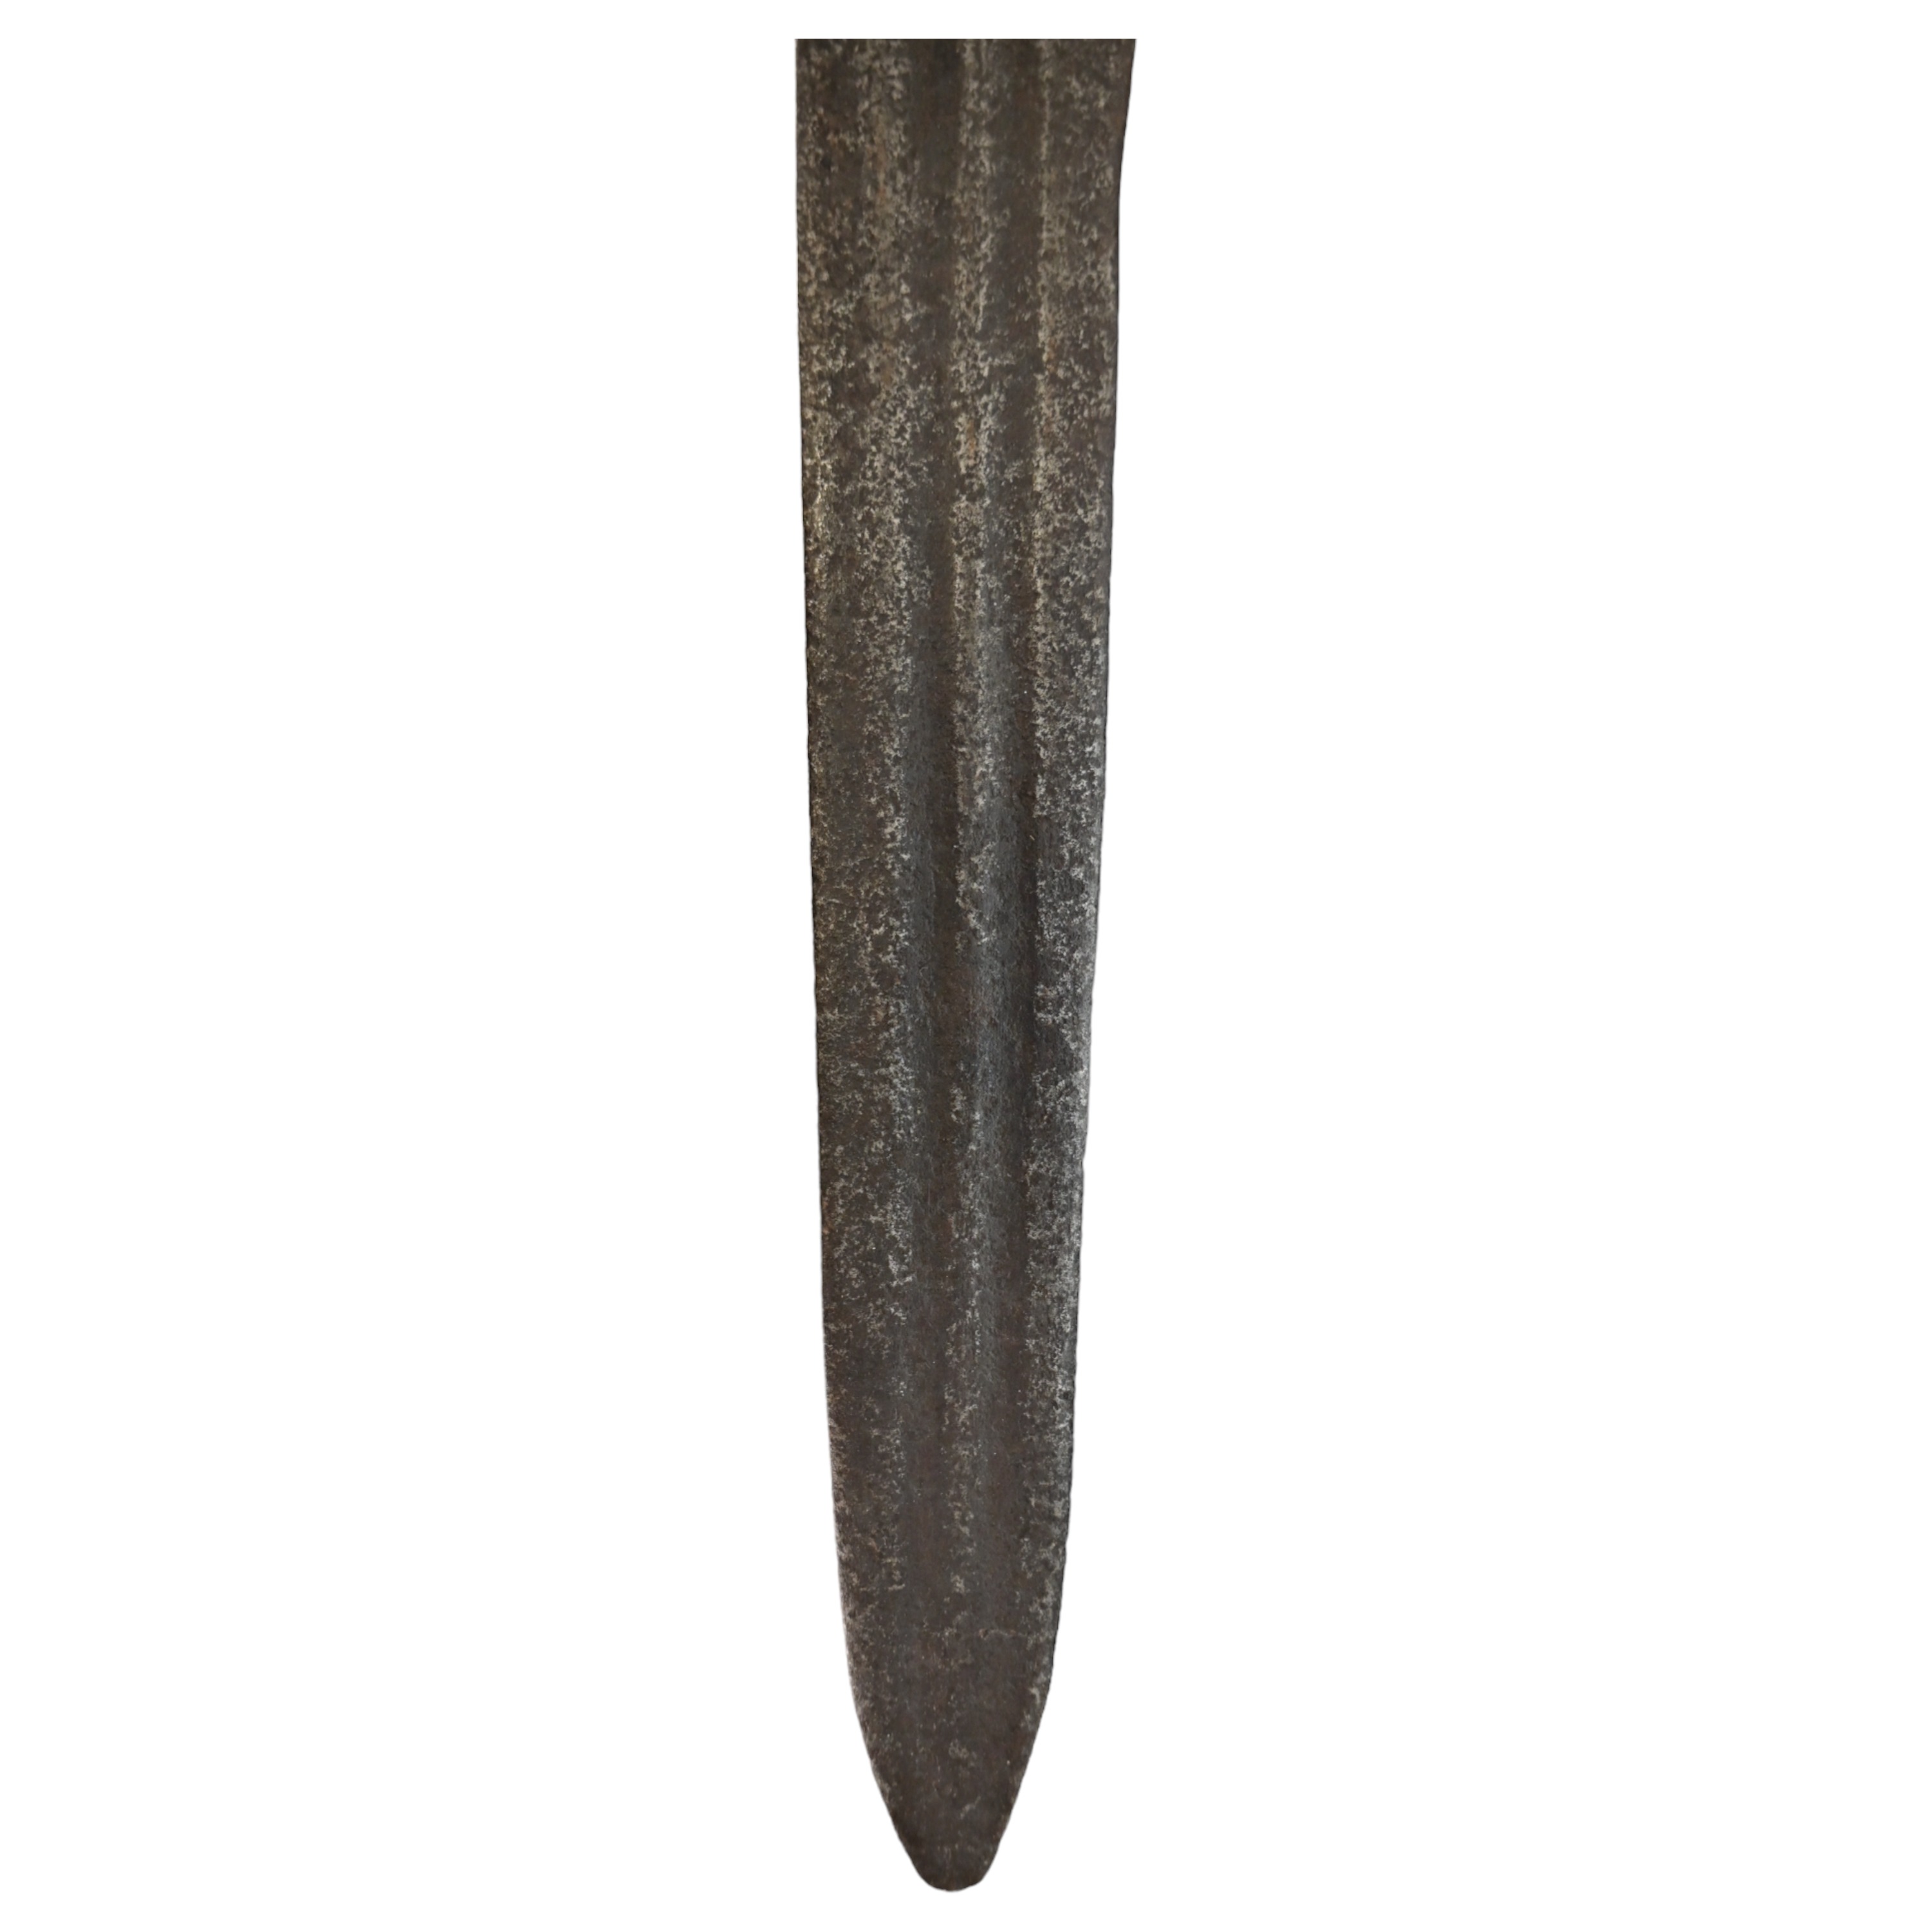 Rare Cinquedea type Sword, 16-17th Century, Italy. - Image 6 of 14